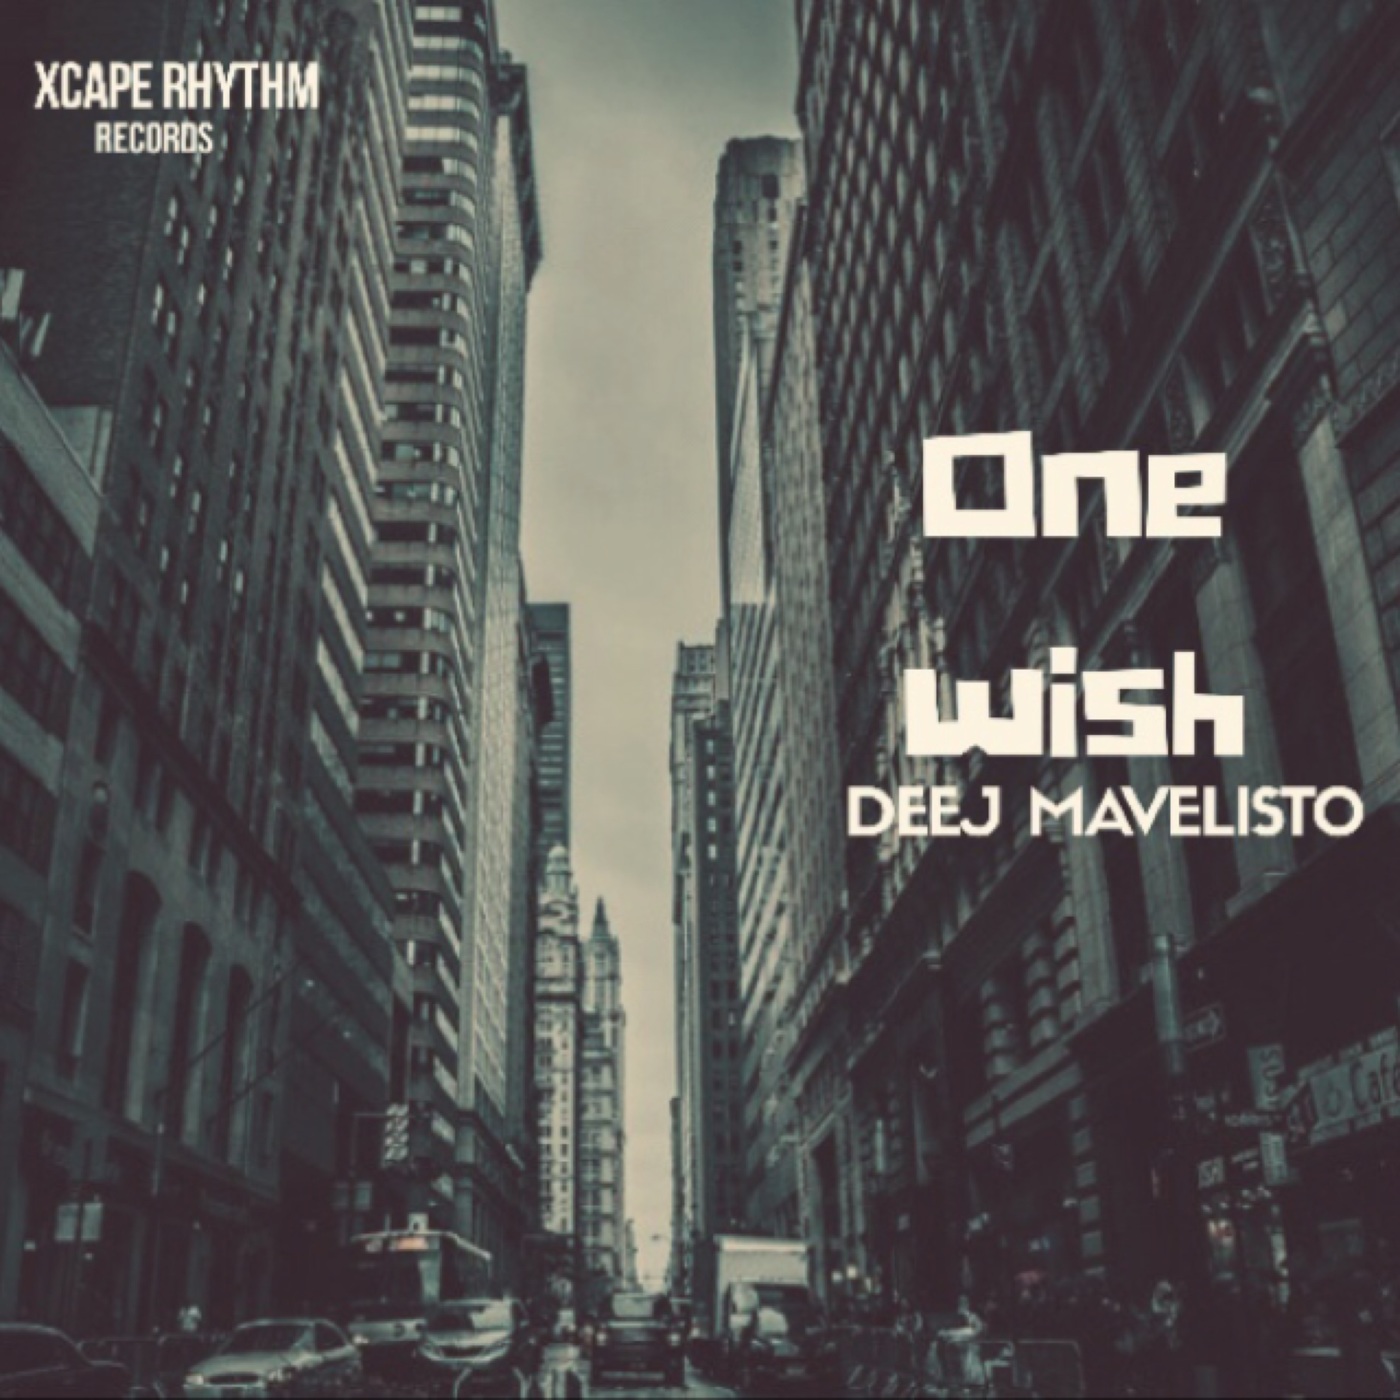 Deej Mavelisto - One Wish / Xcape Rhythm Records